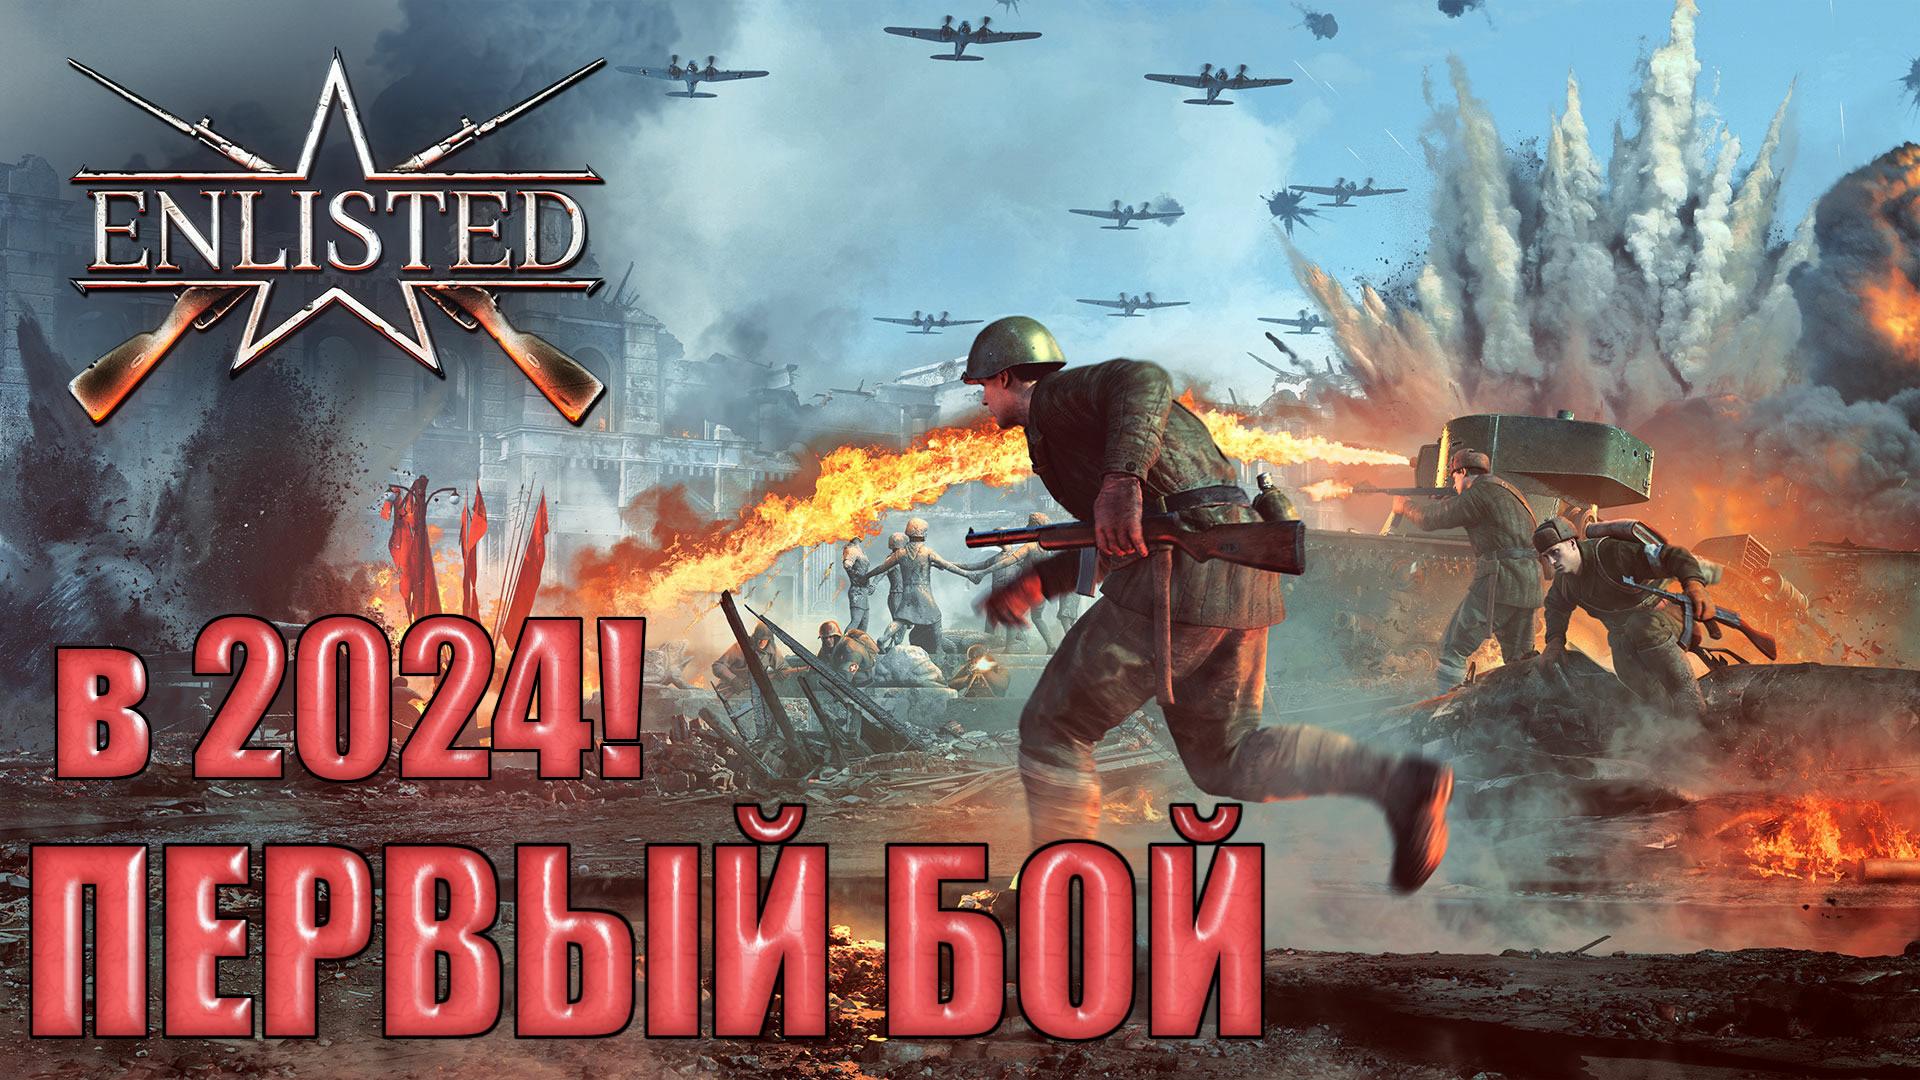 Enlisted - 3 БР Центральный вокзал (Захват) Битва за Сталинград (Без комментариев)